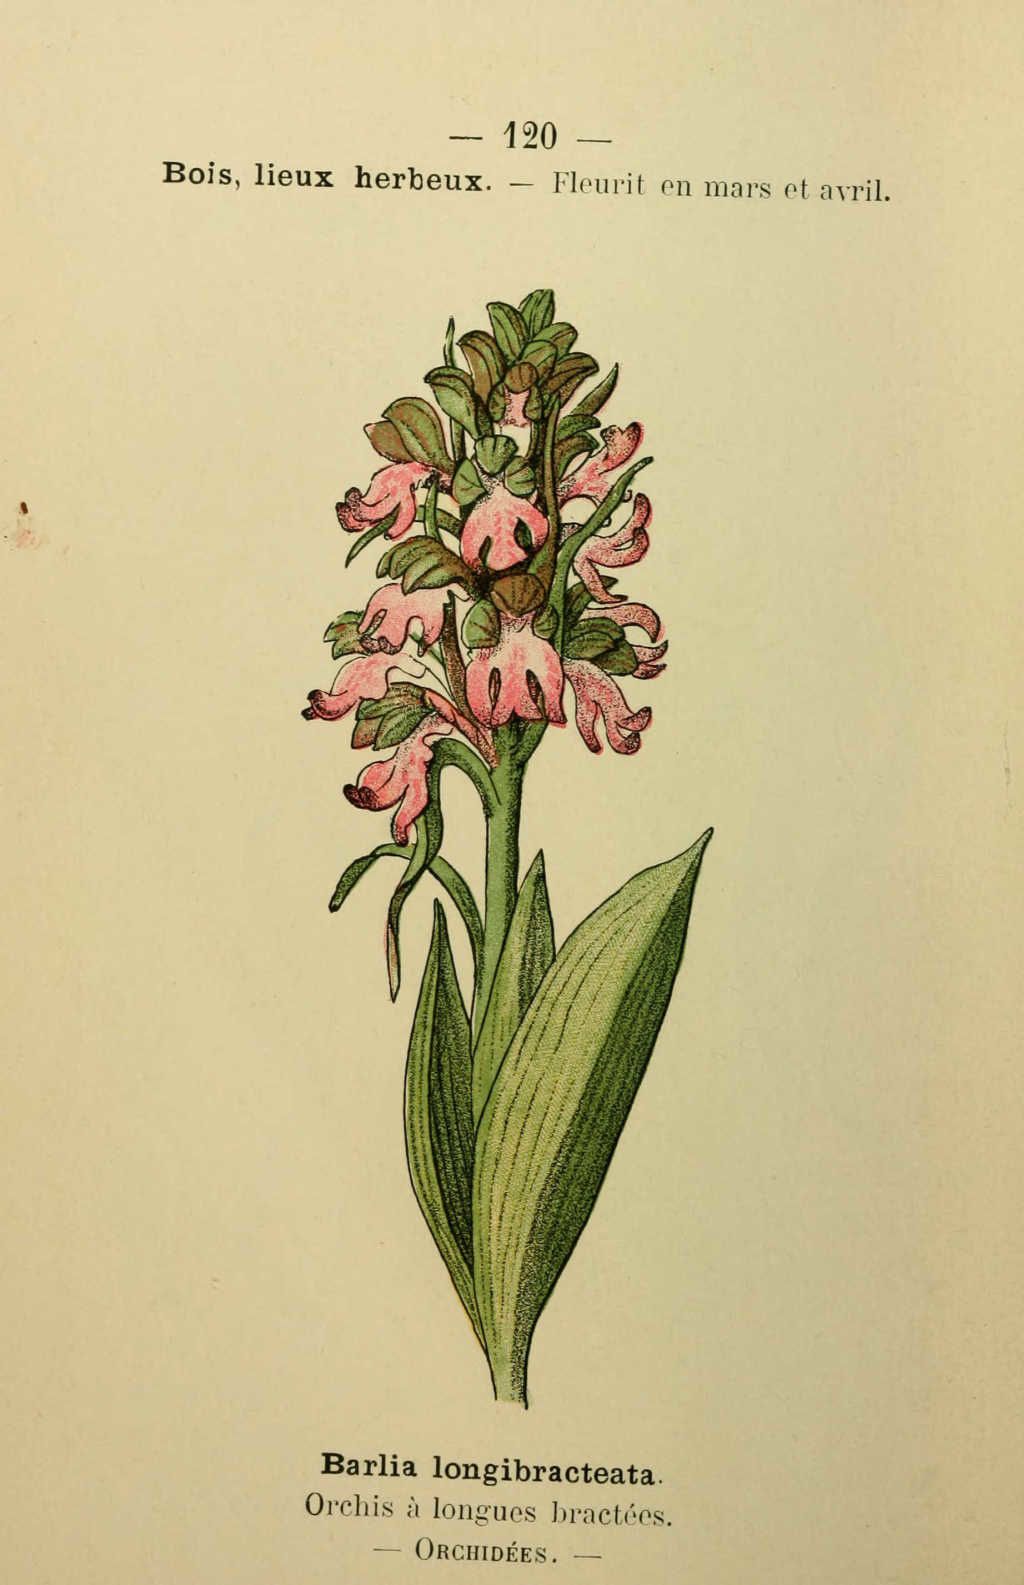 orchis a longues bractees - barlia longibracteata - Dessin fleur Méditerranée